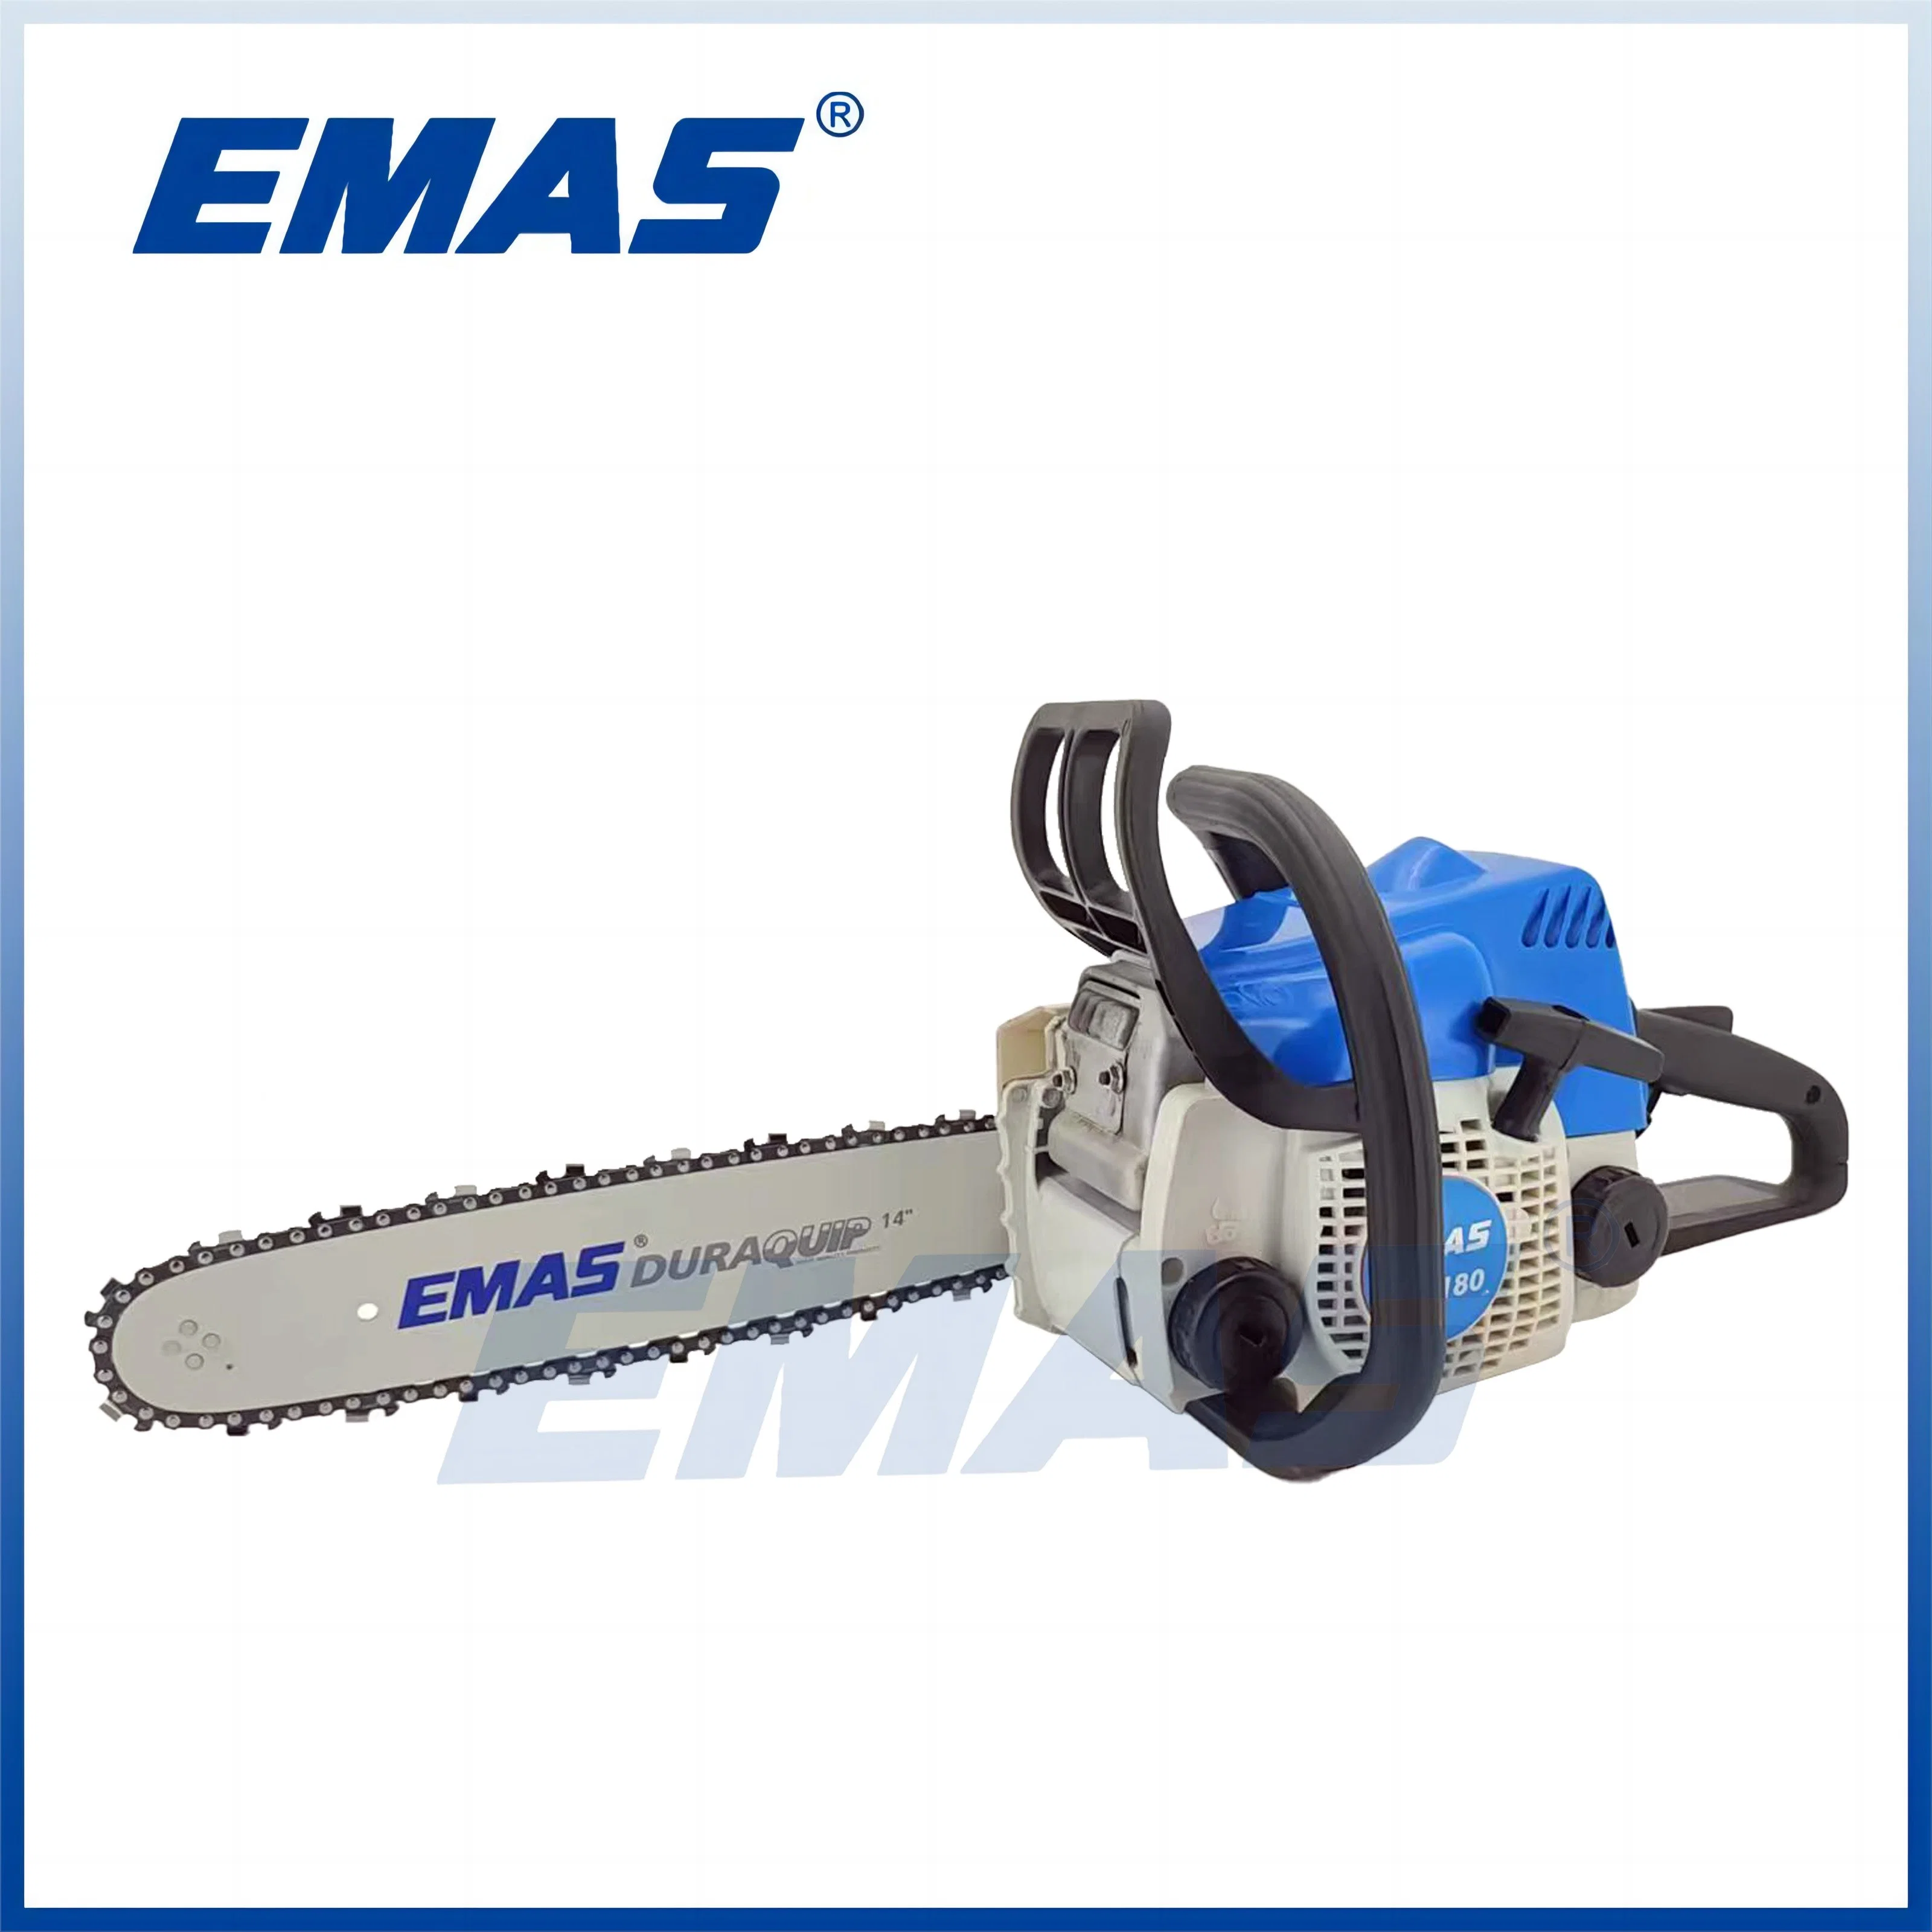 EMAS Home utilizar máquinas de corte de madeira pequenas motosserra a gasolina de 32 cc Est180